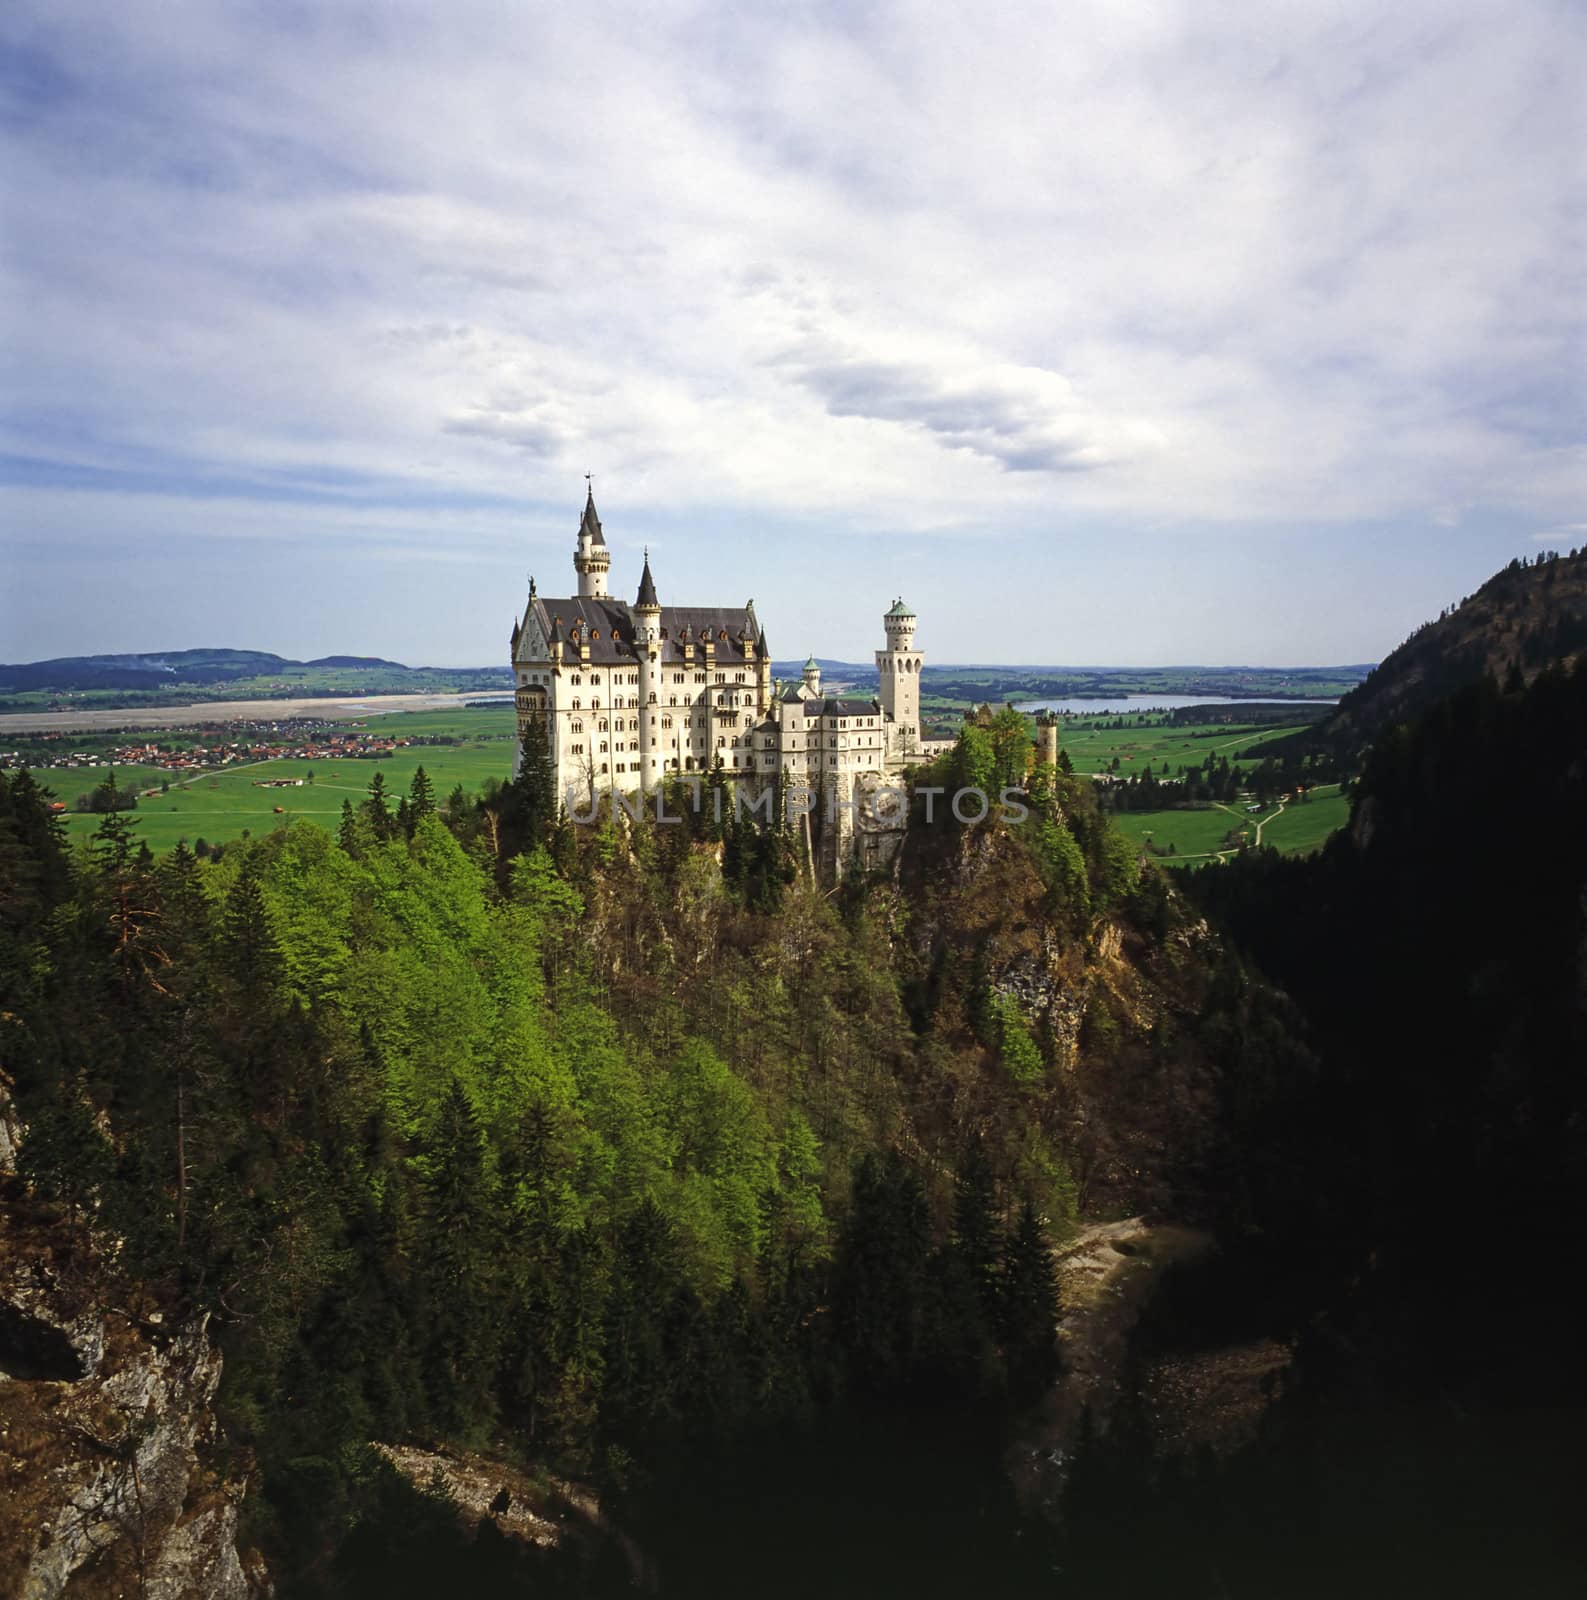 Castle, Germany by jol66